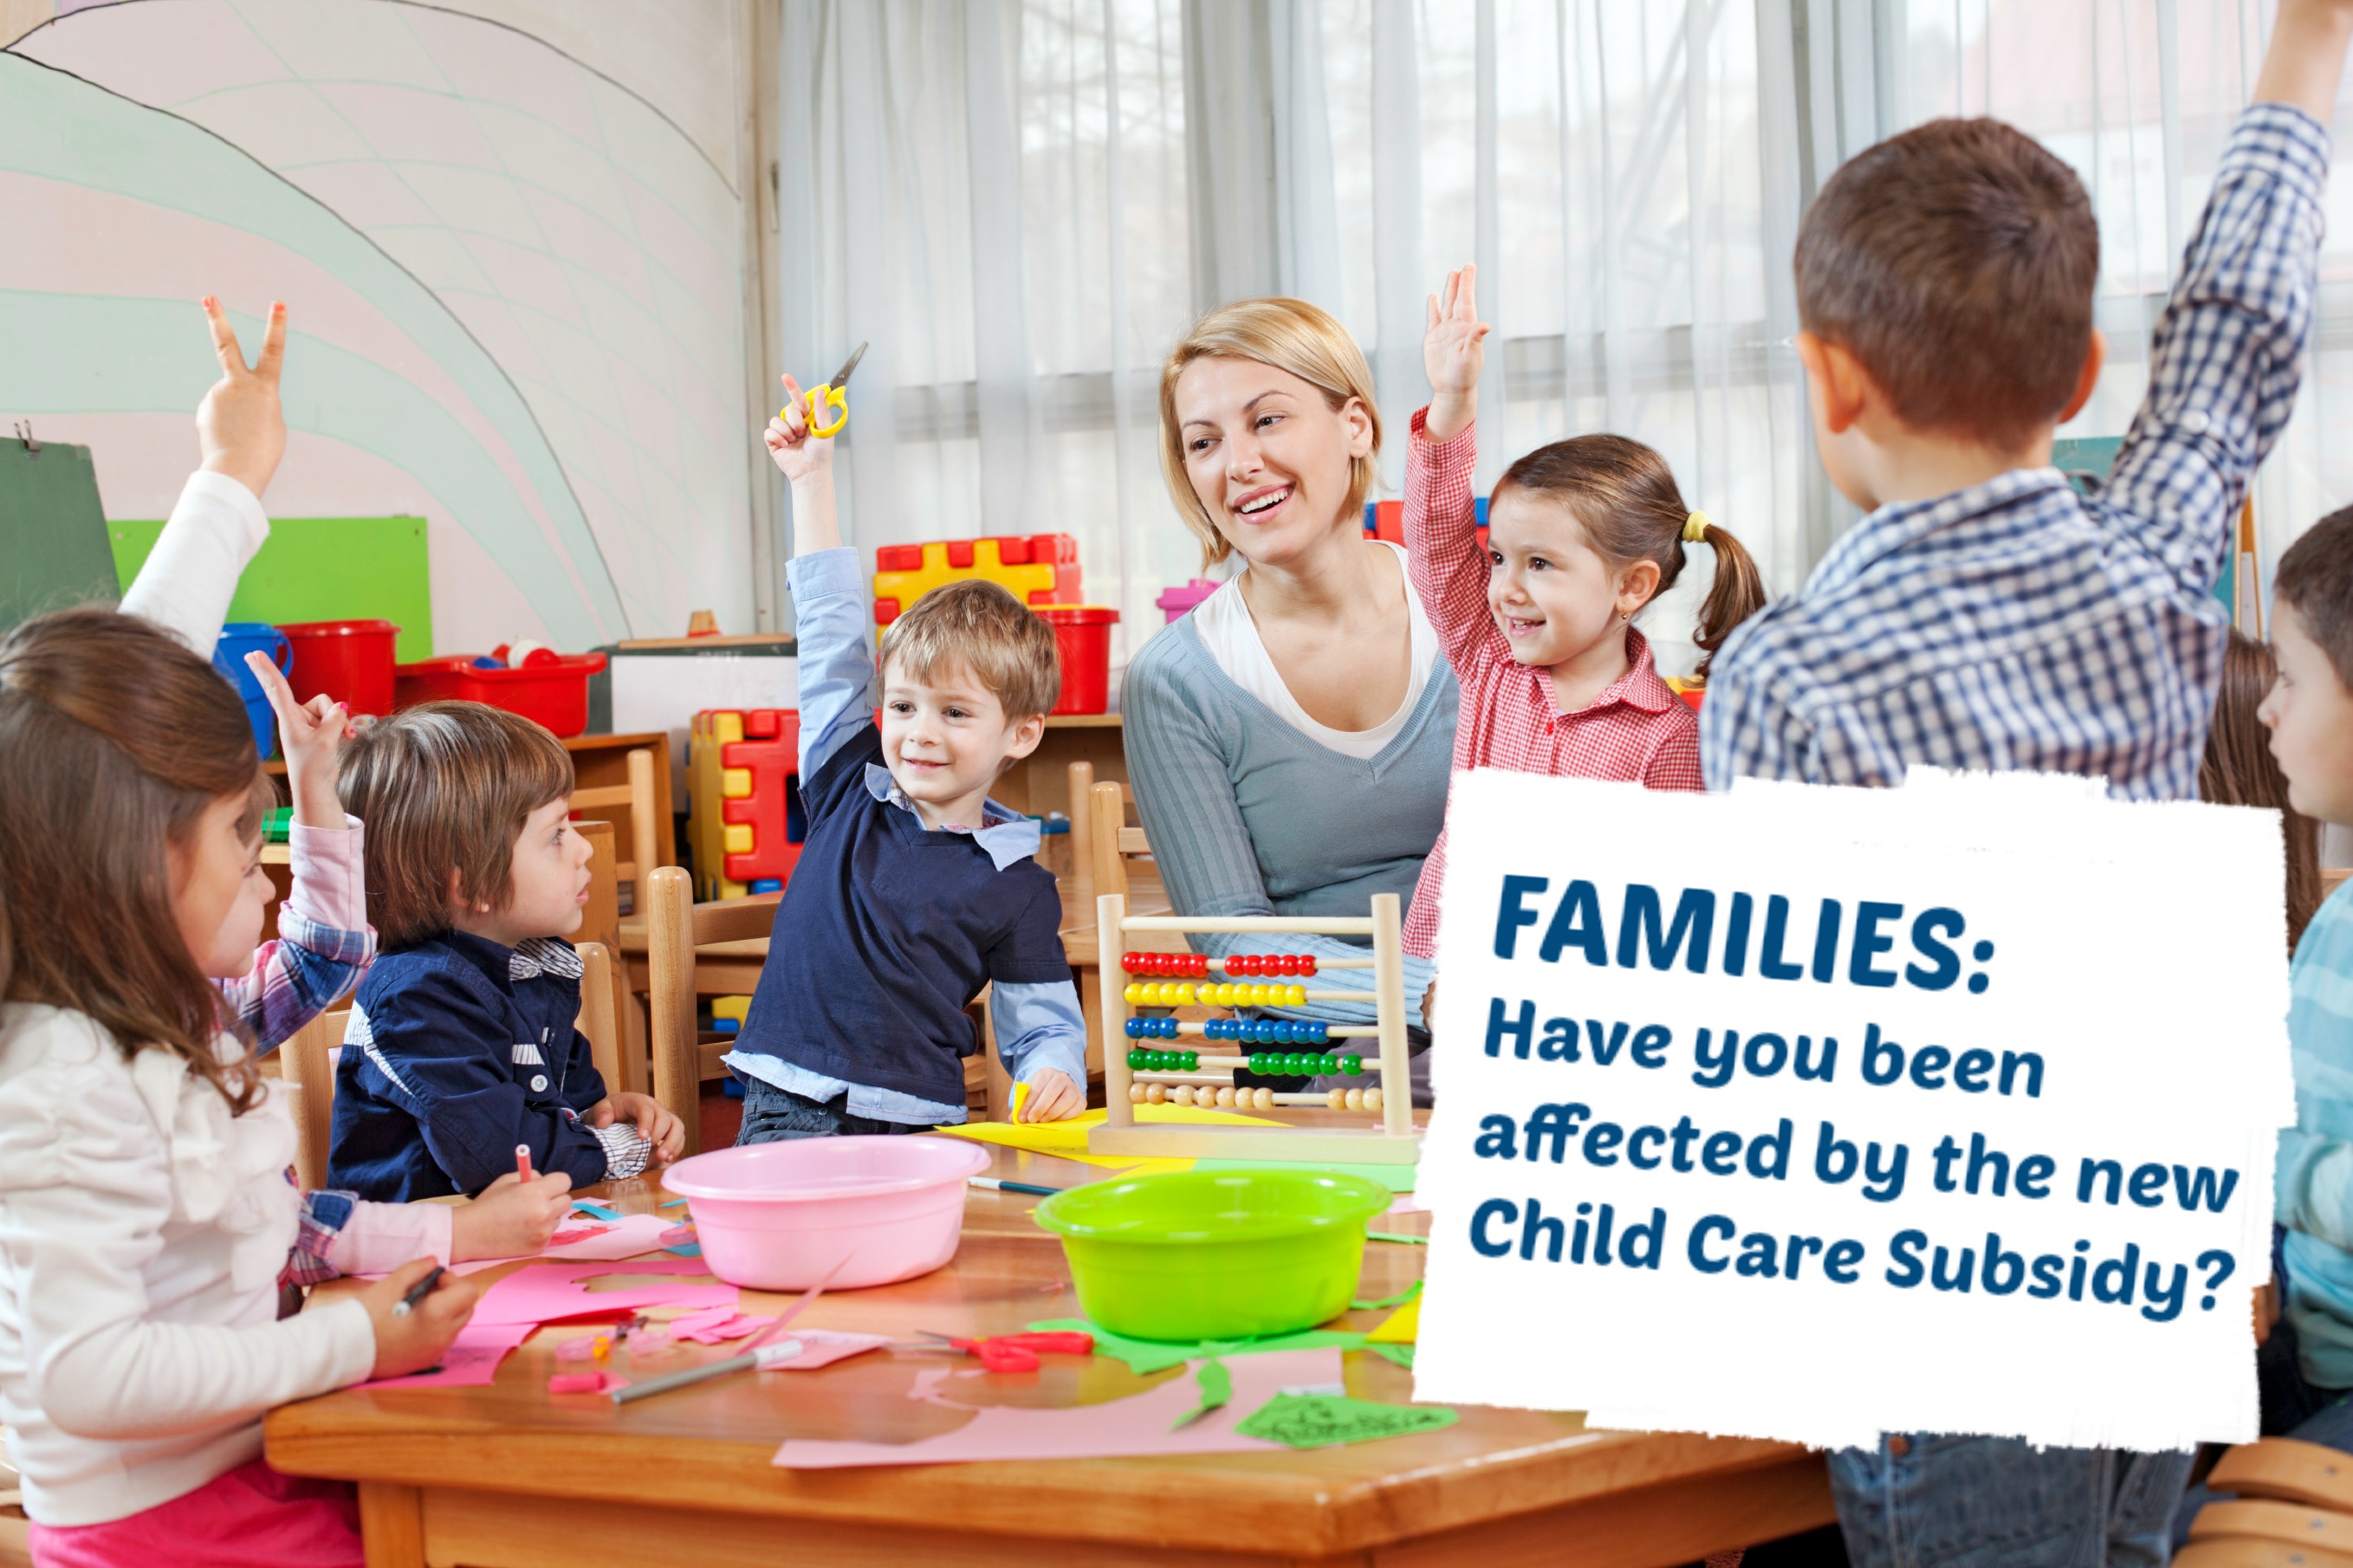 Families CCS survey image